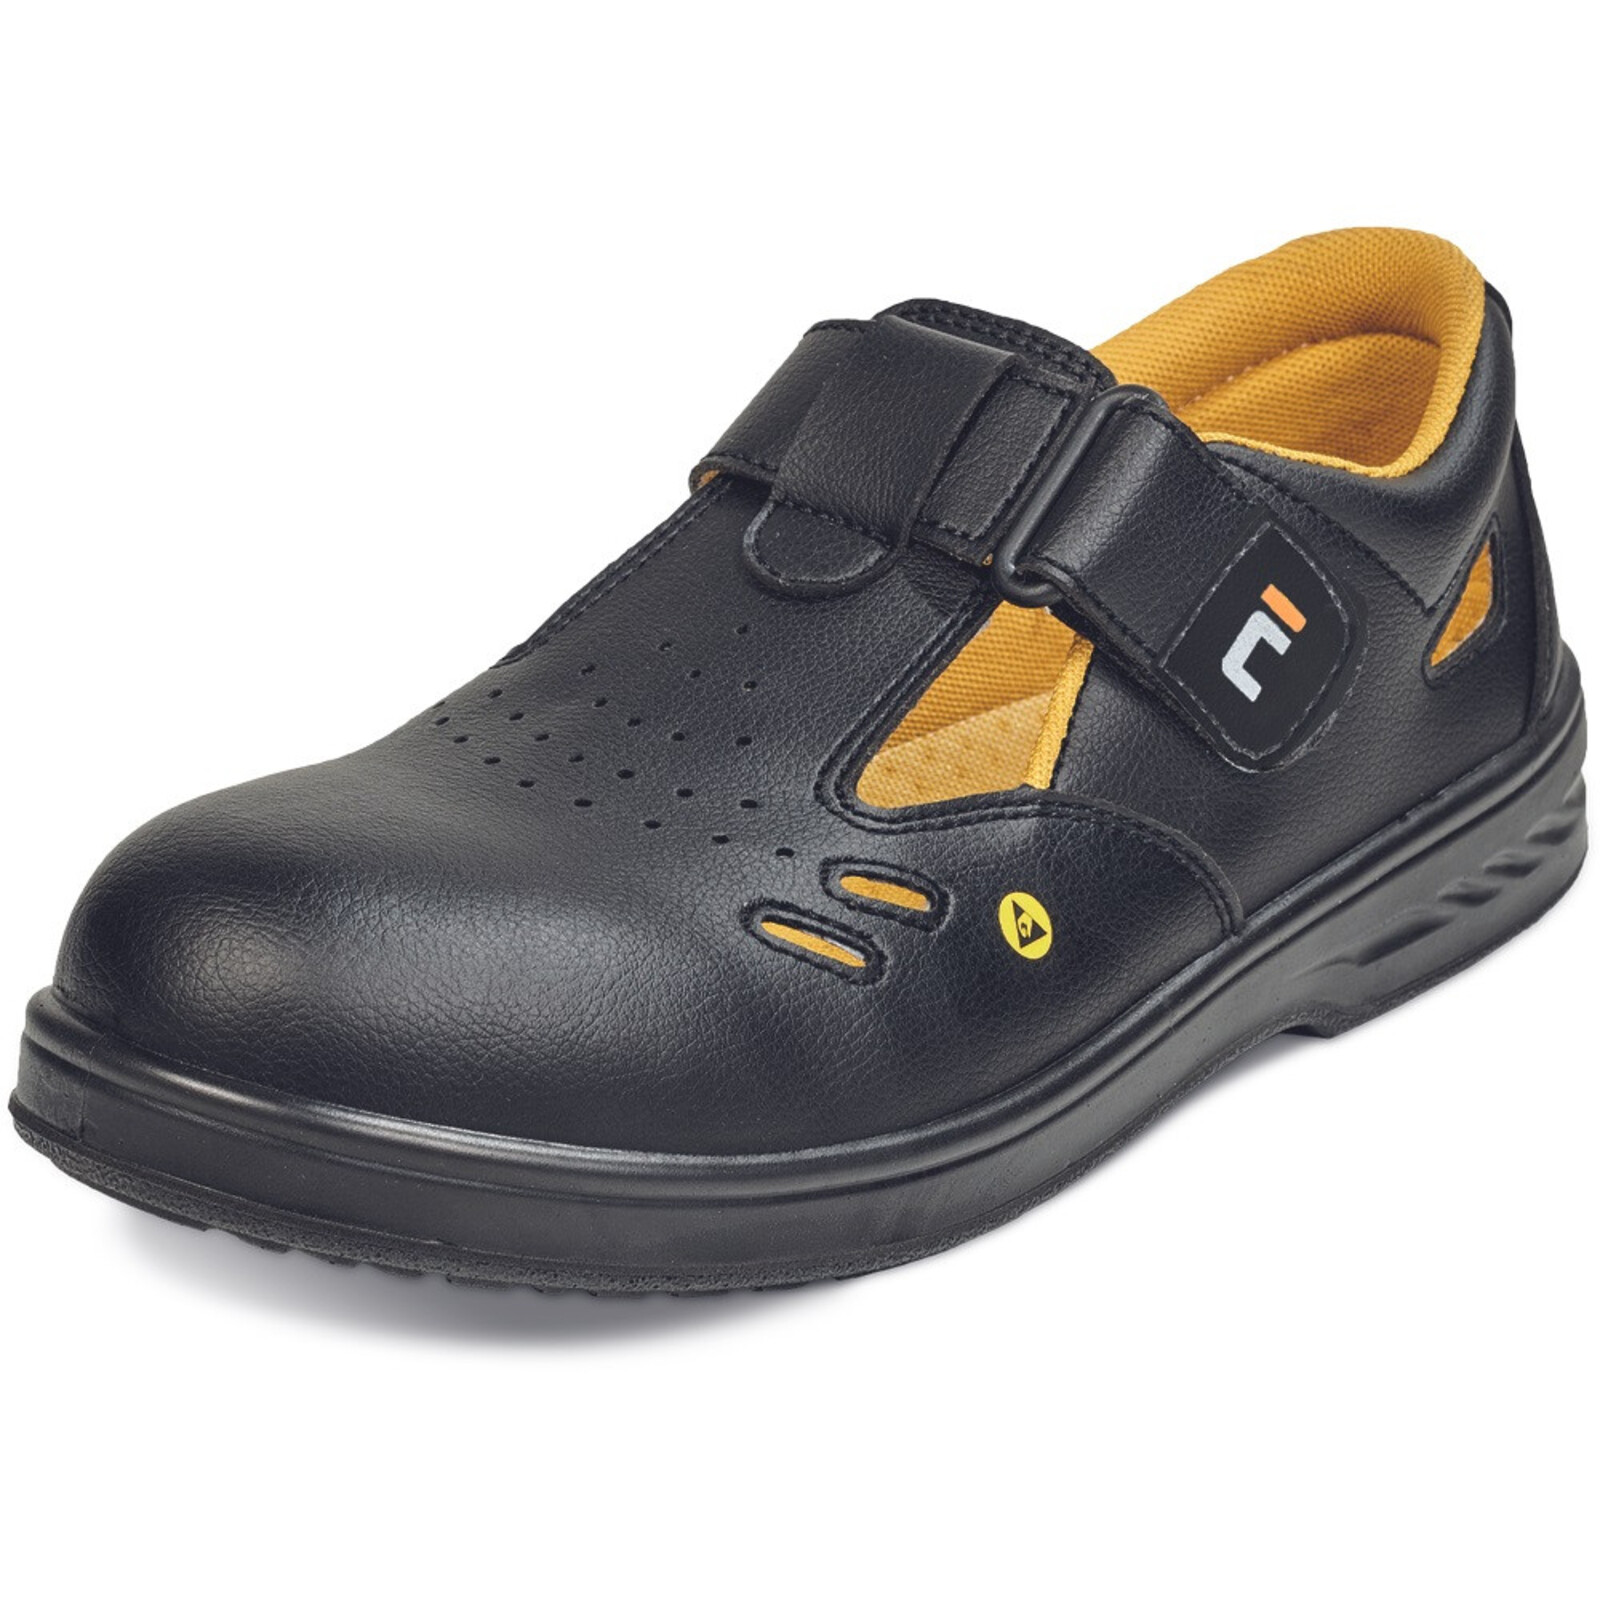 Bezpečnostné sandále Raven MF ESD S1 SRC - veľkosť: 45, farba: čierna